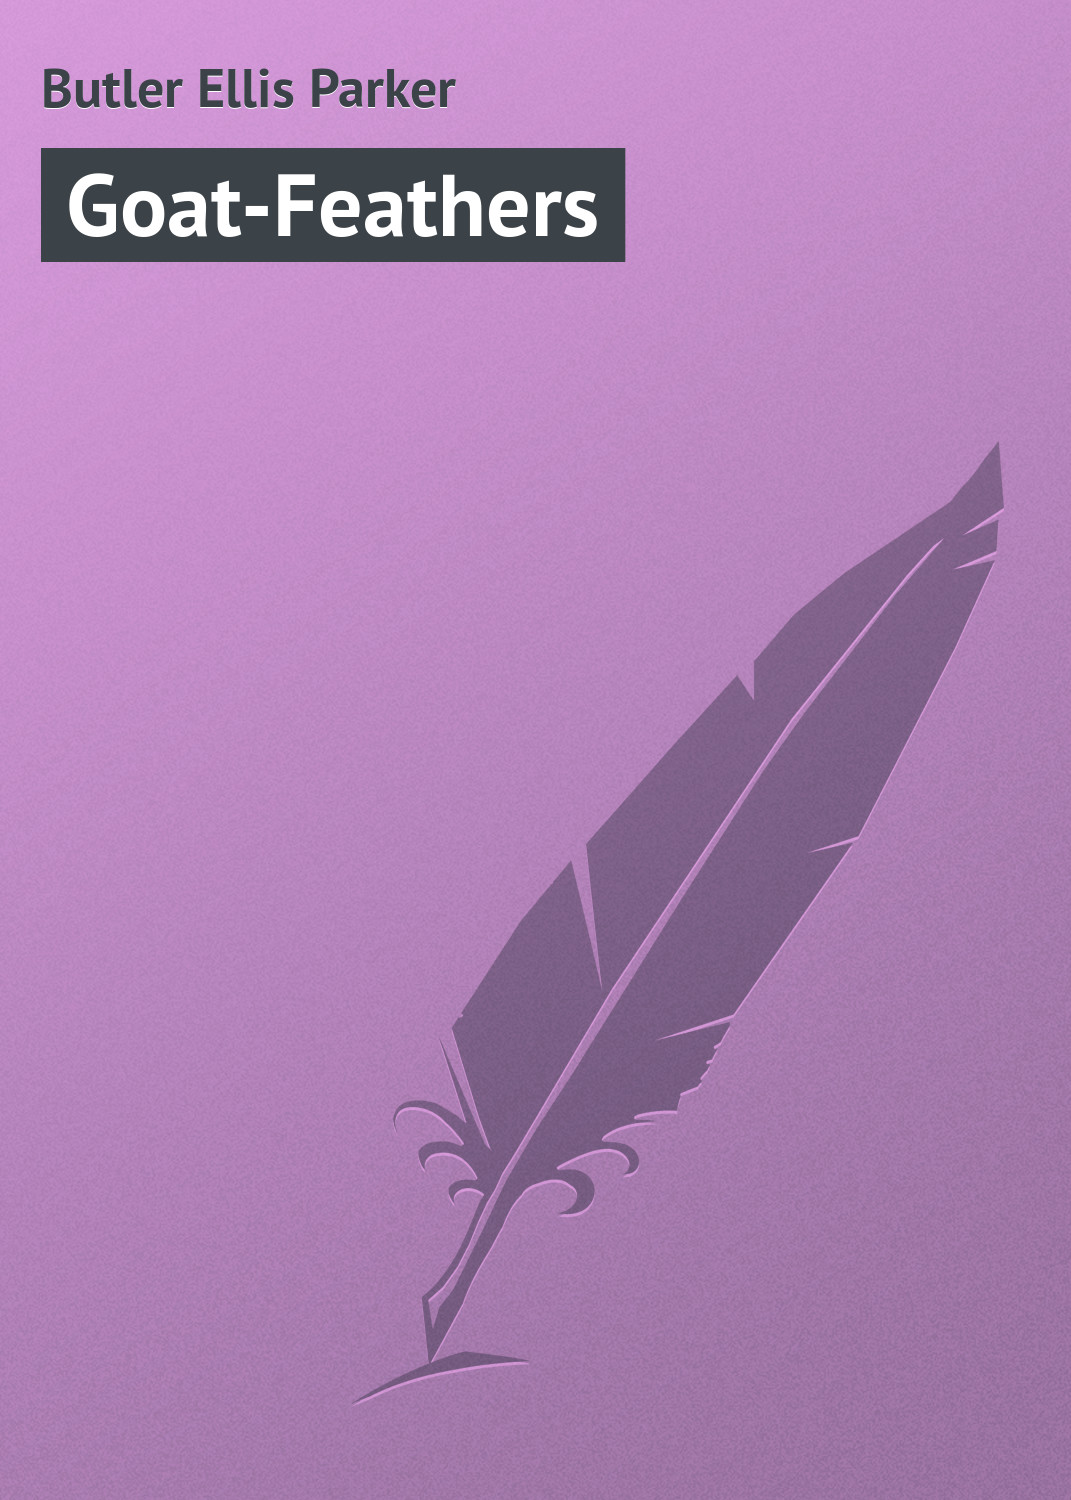 Книга Goat-Feathers из серии , созданная Ellis Butler, может относится к жанру Зарубежный юмор, Зарубежная классика, Иностранные языки. Стоимость электронной книги Goat-Feathers с идентификатором 23166003 составляет 5.99 руб.